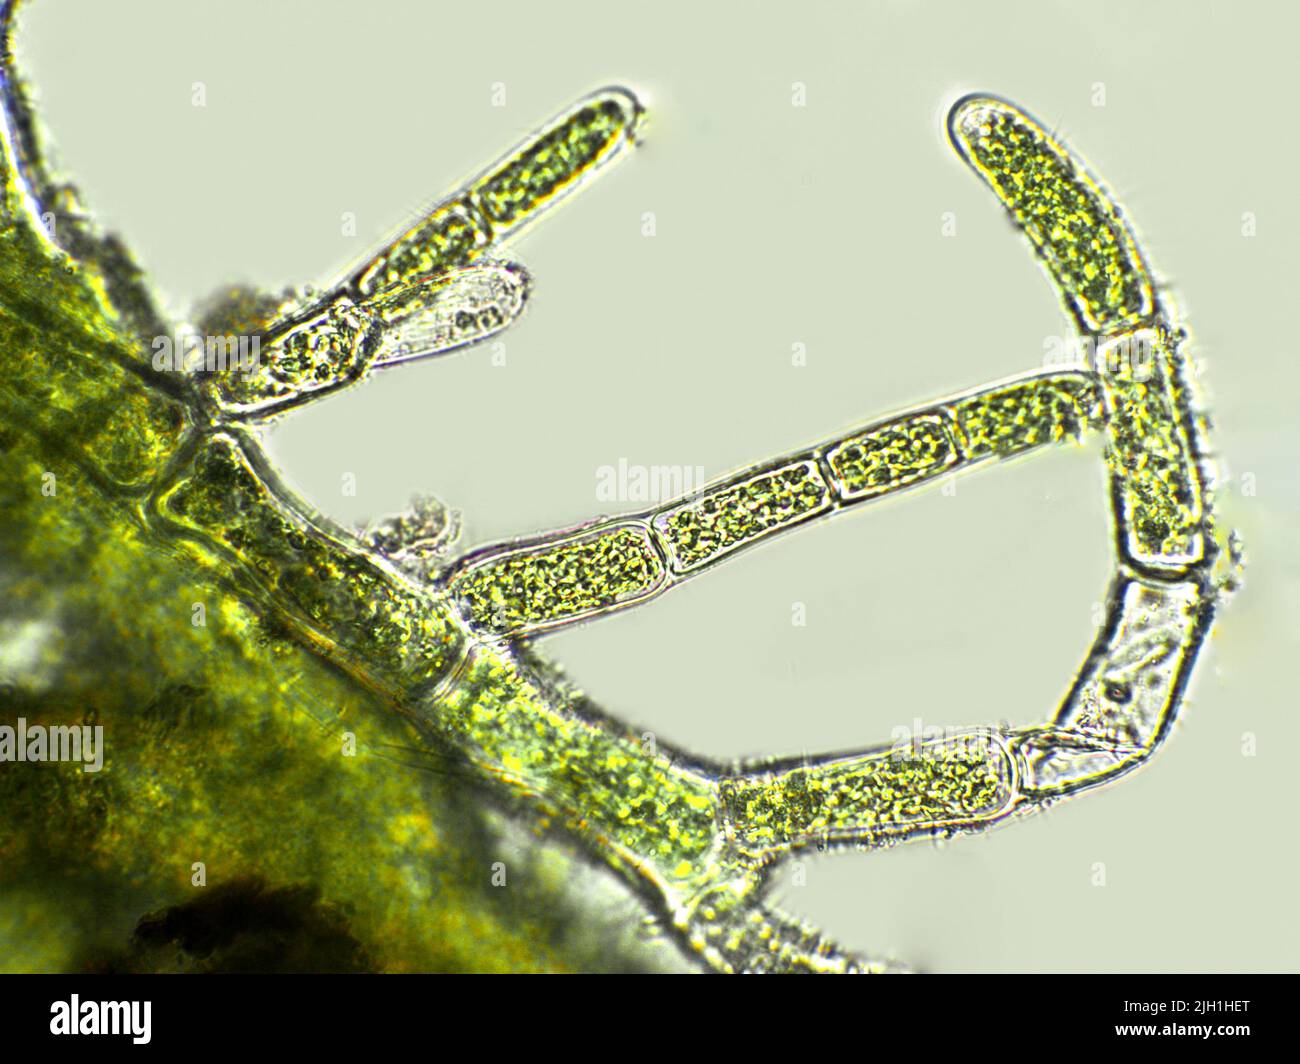 Algues cladophora sp. Sous une vue microscopique, algues vertes filamenteuses Banque D'Images